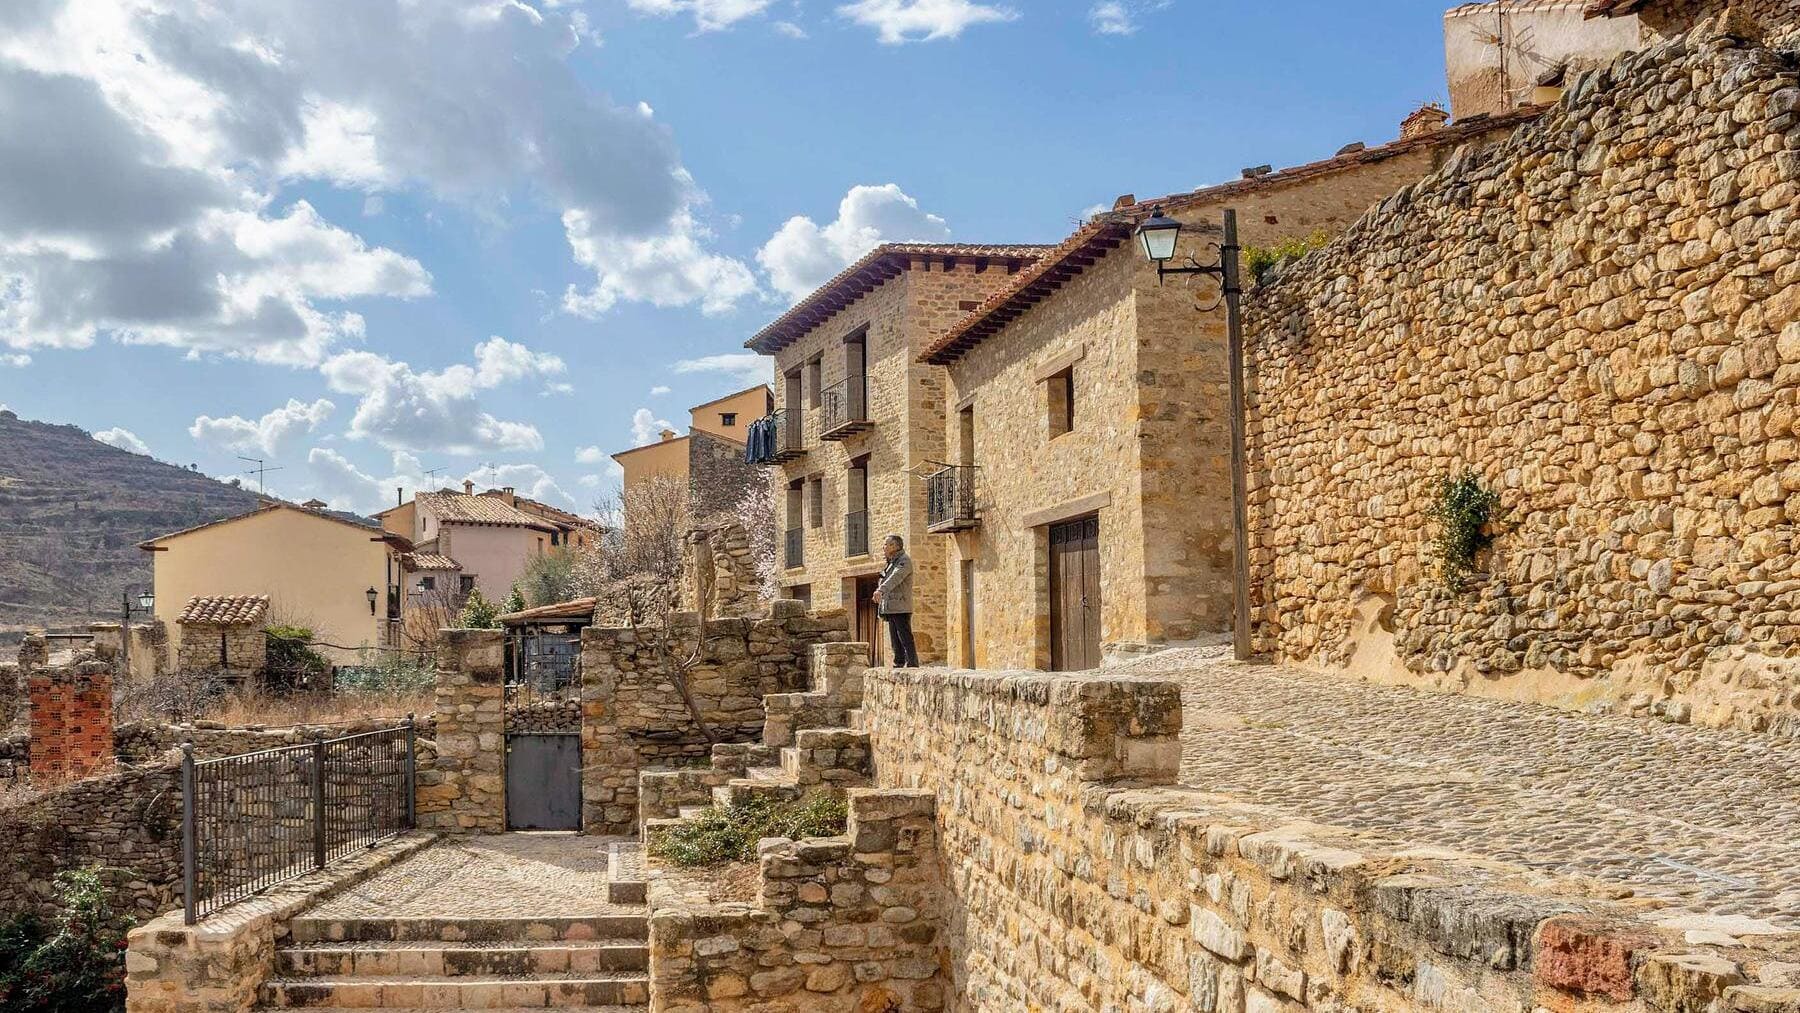 Aragón tiene uno de los pueblos más bonitos de España, según ‘The Times’